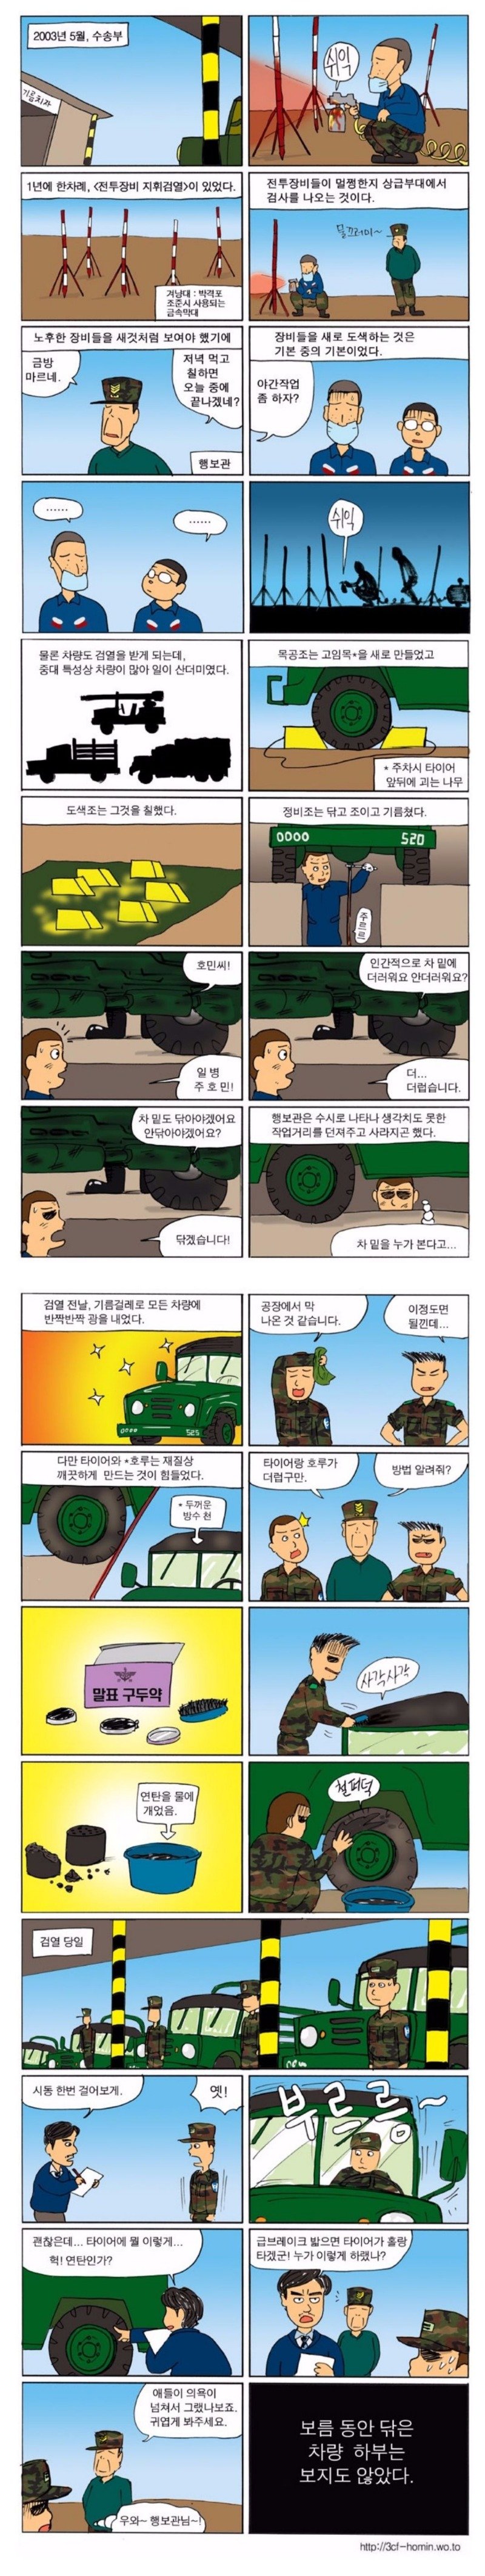 군부대 지휘검열의 현실.jpg